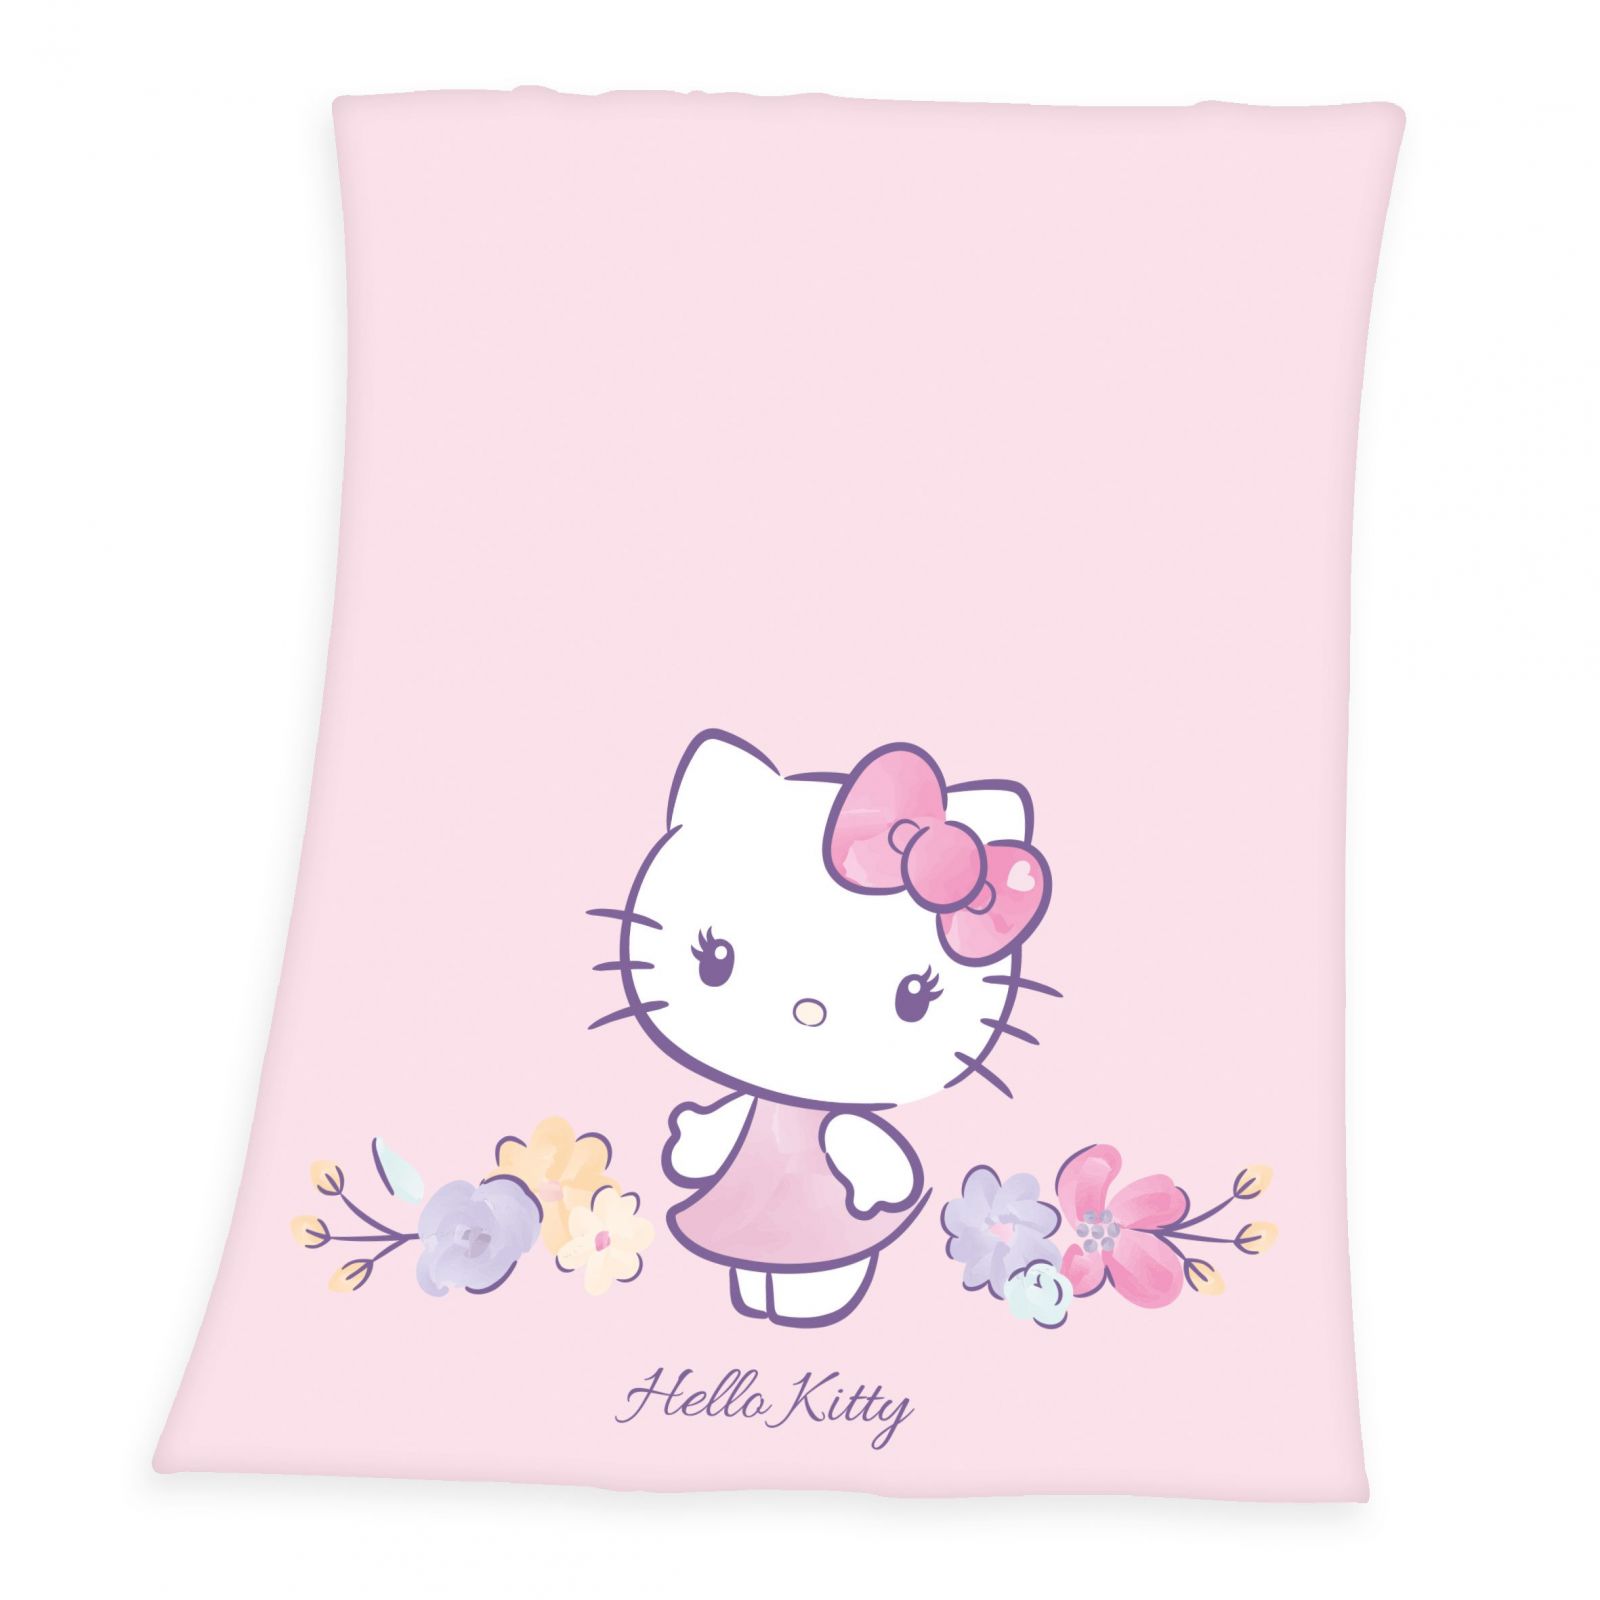 Hello Kitty Fleece Blanket Hello Kitty 130 x 160 cm Herding